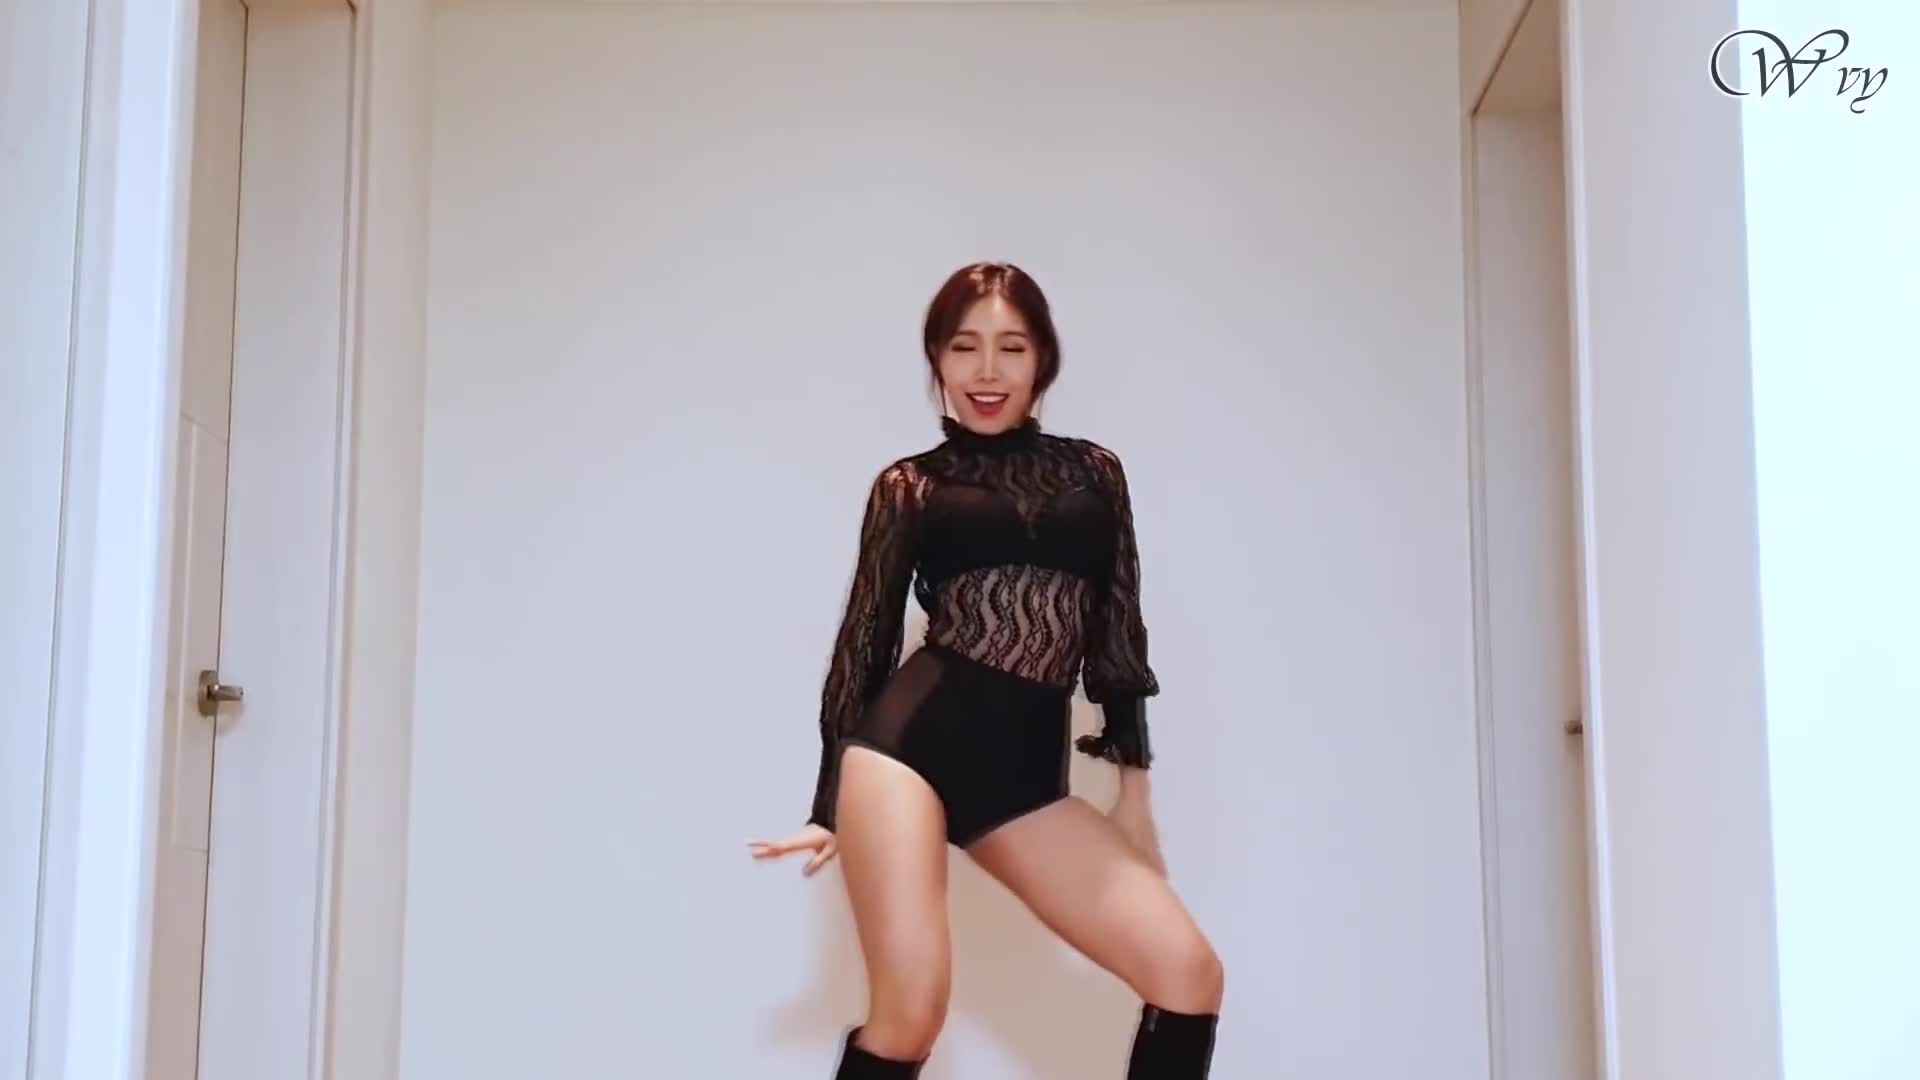 Girl Group Dance Medley(Jennie Solo,뚜두뚜두,(G)I-DLE,Sunmi,Twice,MAMAMOO,BBoom BBoom)WAVEYA